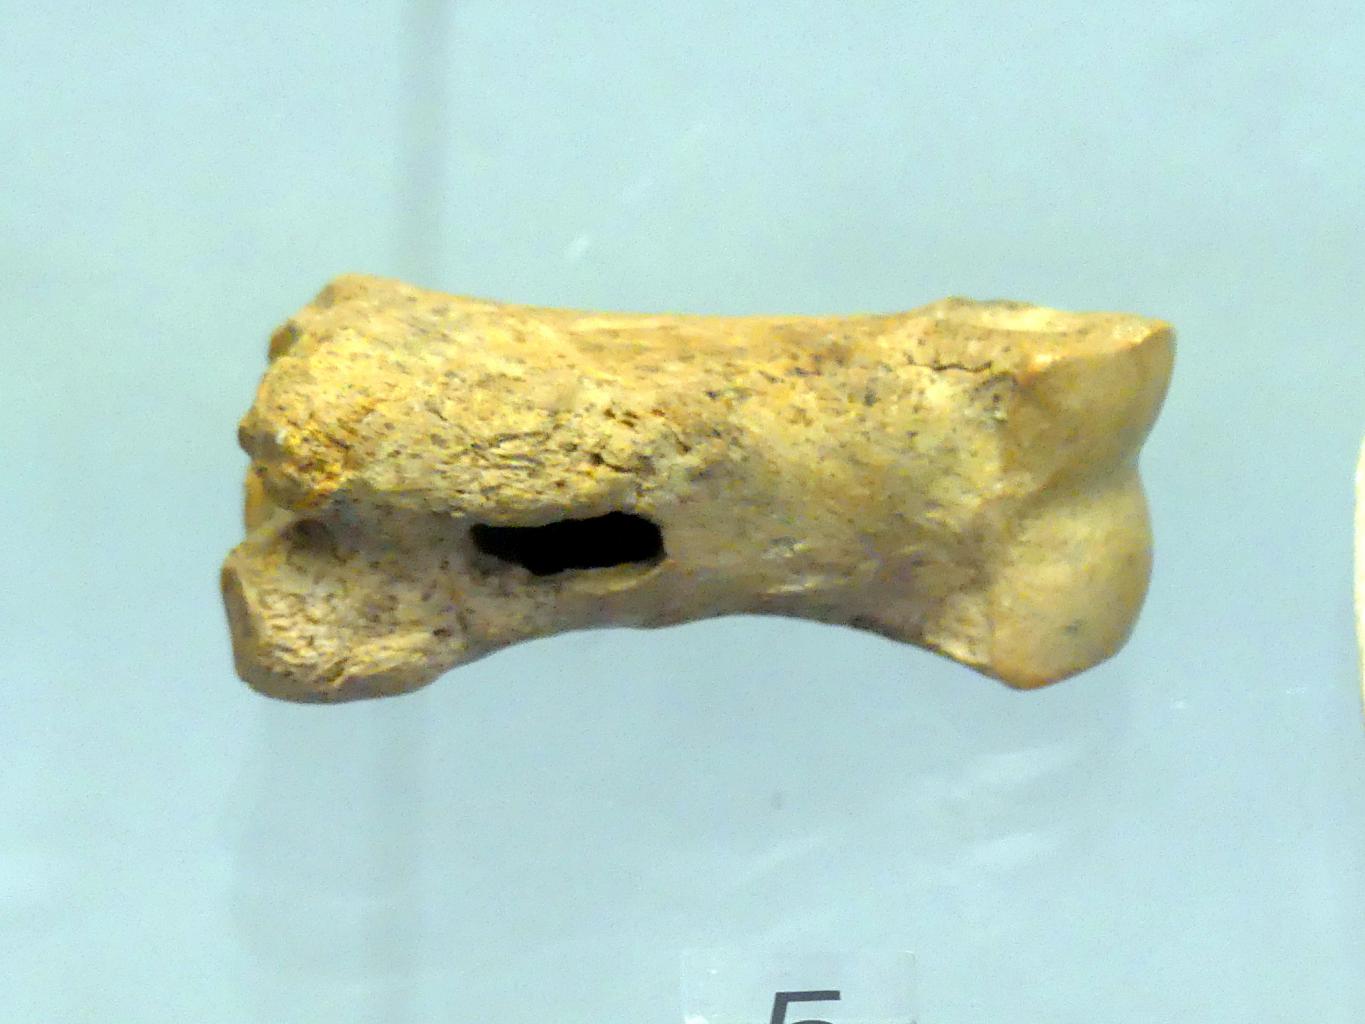 Durchbohrter Rentierfußknochen, Jungpaläolithikum, 43000 - 10000 v. Chr., Bild 1/2